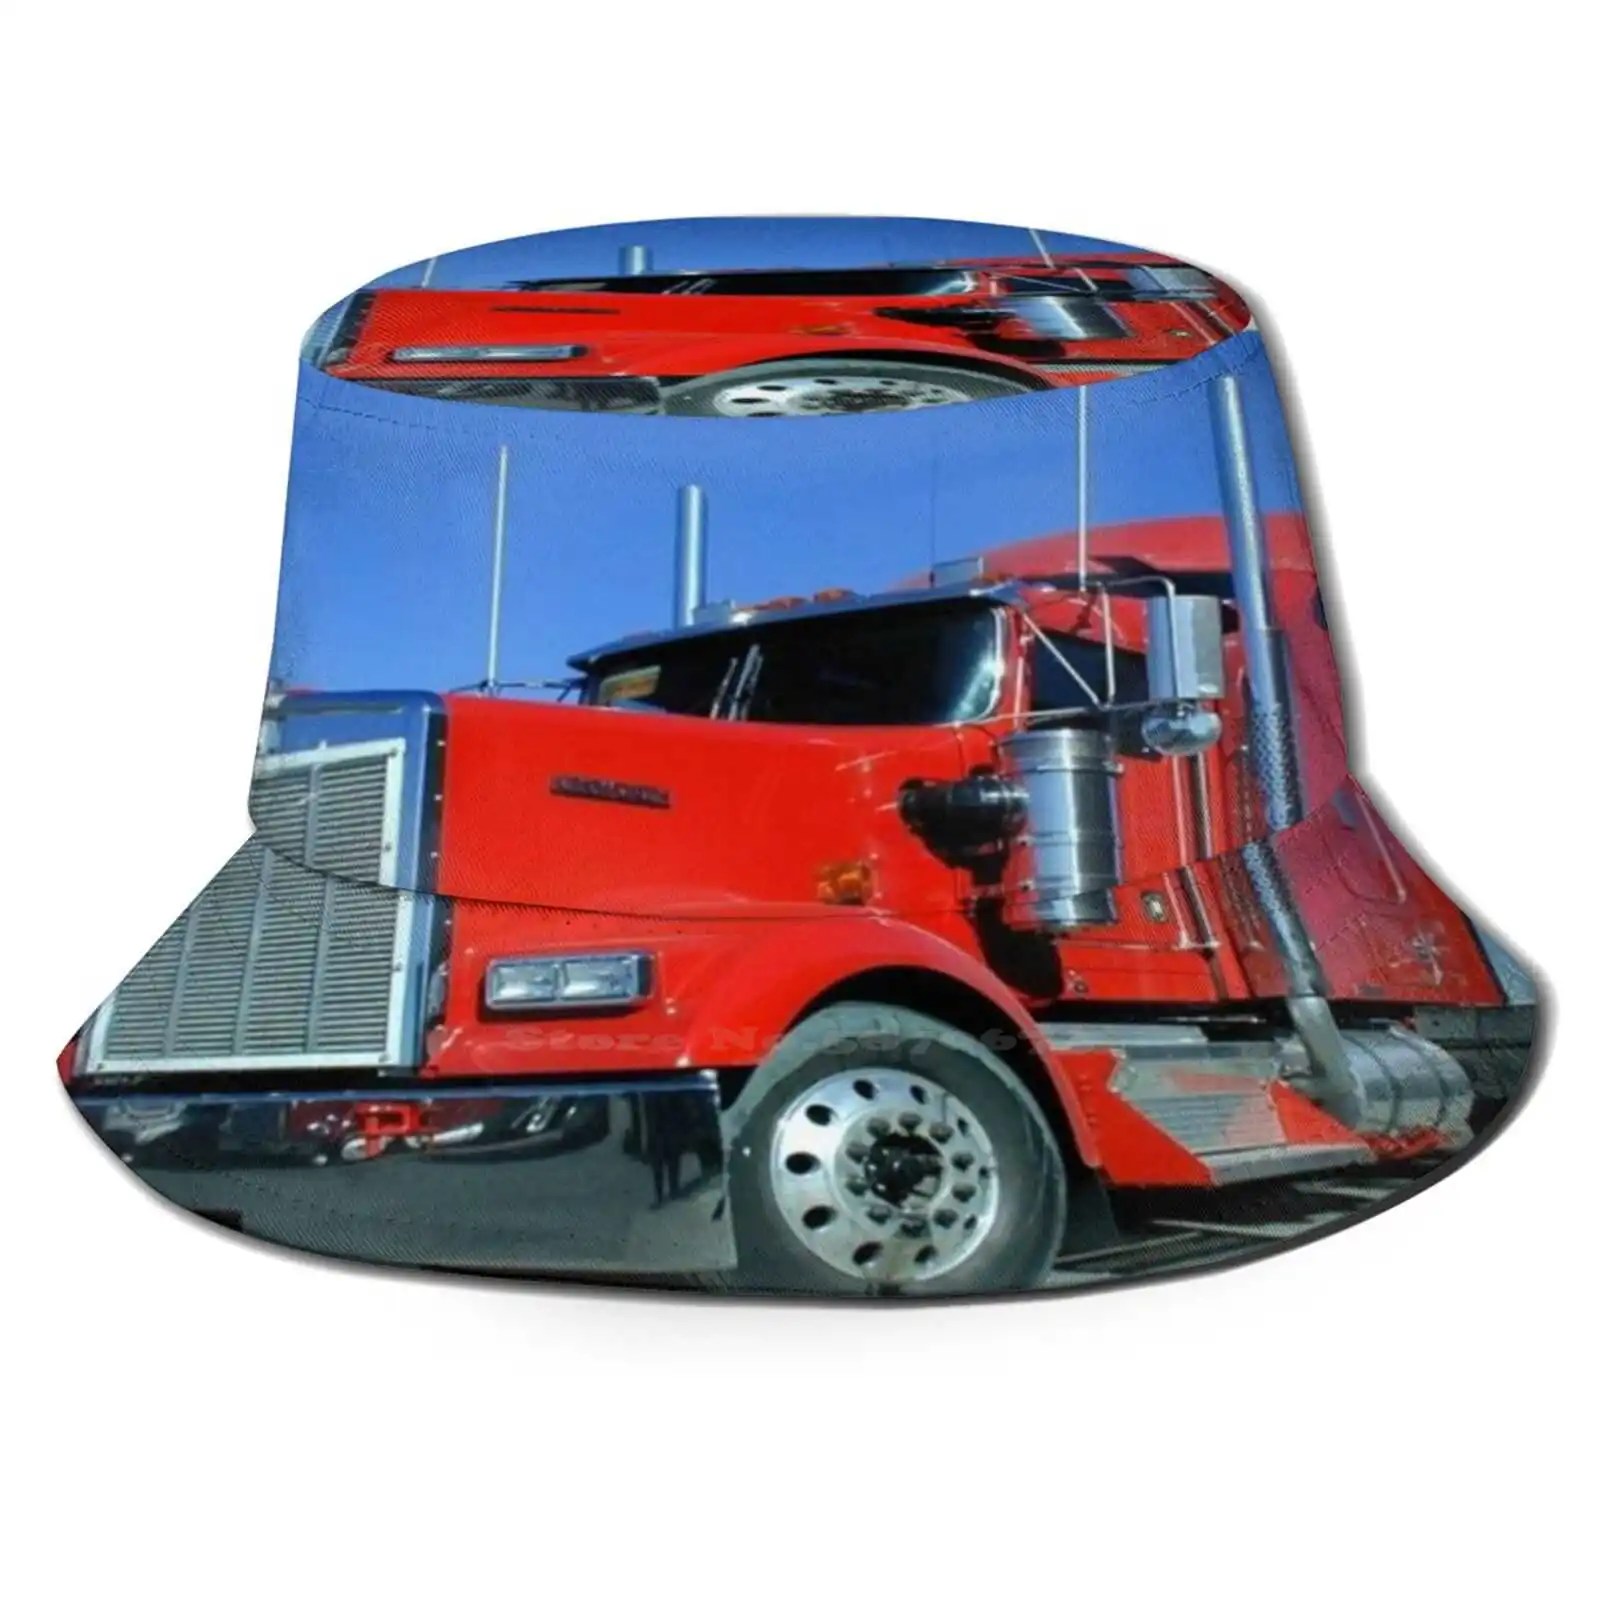 

Панама Складная с большим грузовиком, фургон для перевозки, трактор, монстр-Трак, Красный монстр